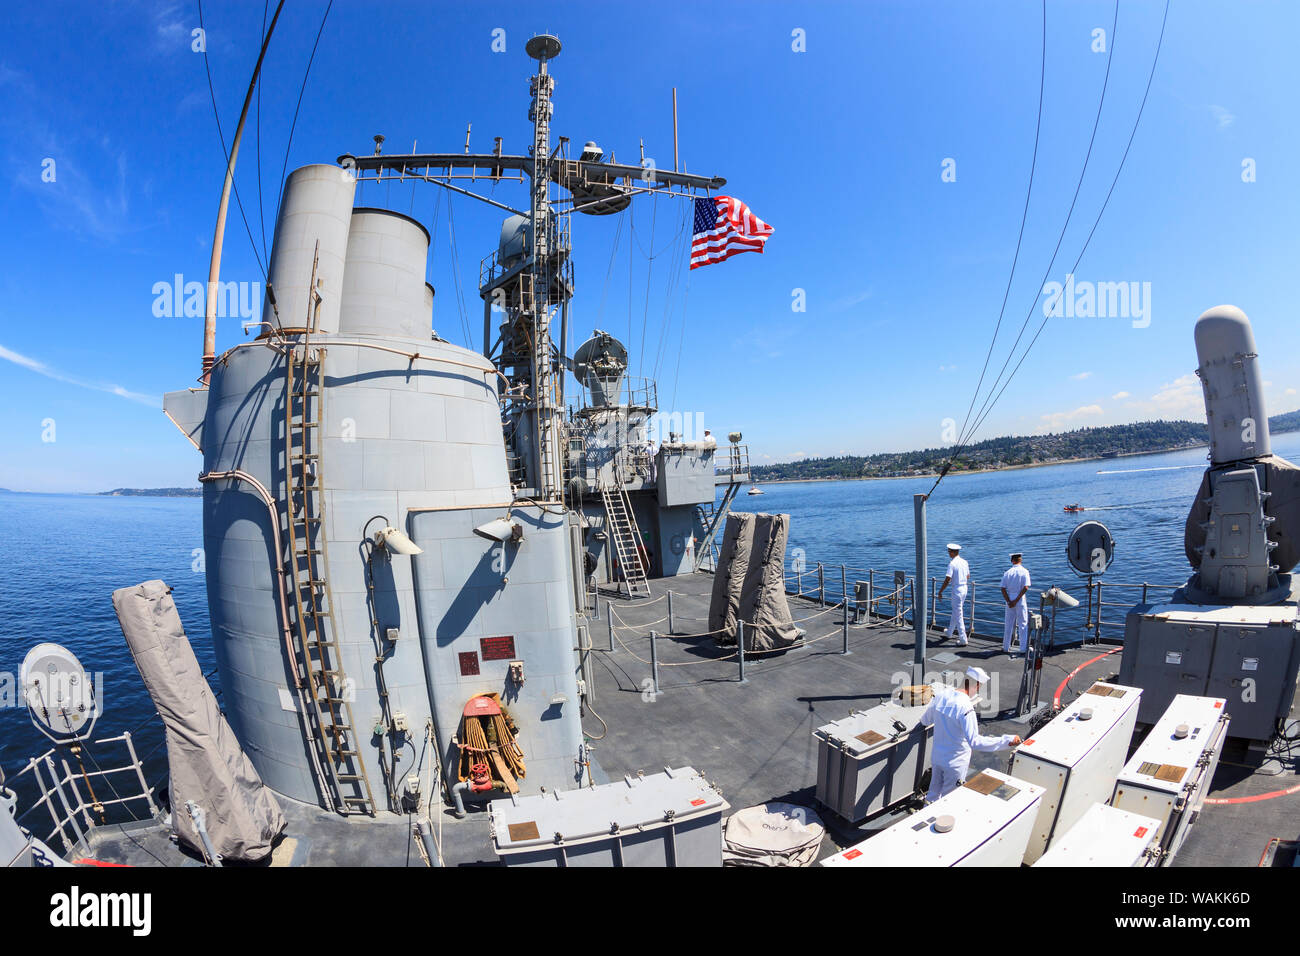 Views an Bord der USS Bunker Hill (CG52) Guided missile Cruiser, Seafair Feier. Parade der Schiffe während der Fleet Week, Elliott Bay, Seattle, Washington State, USA (Editorial nur verwenden) Stockfoto